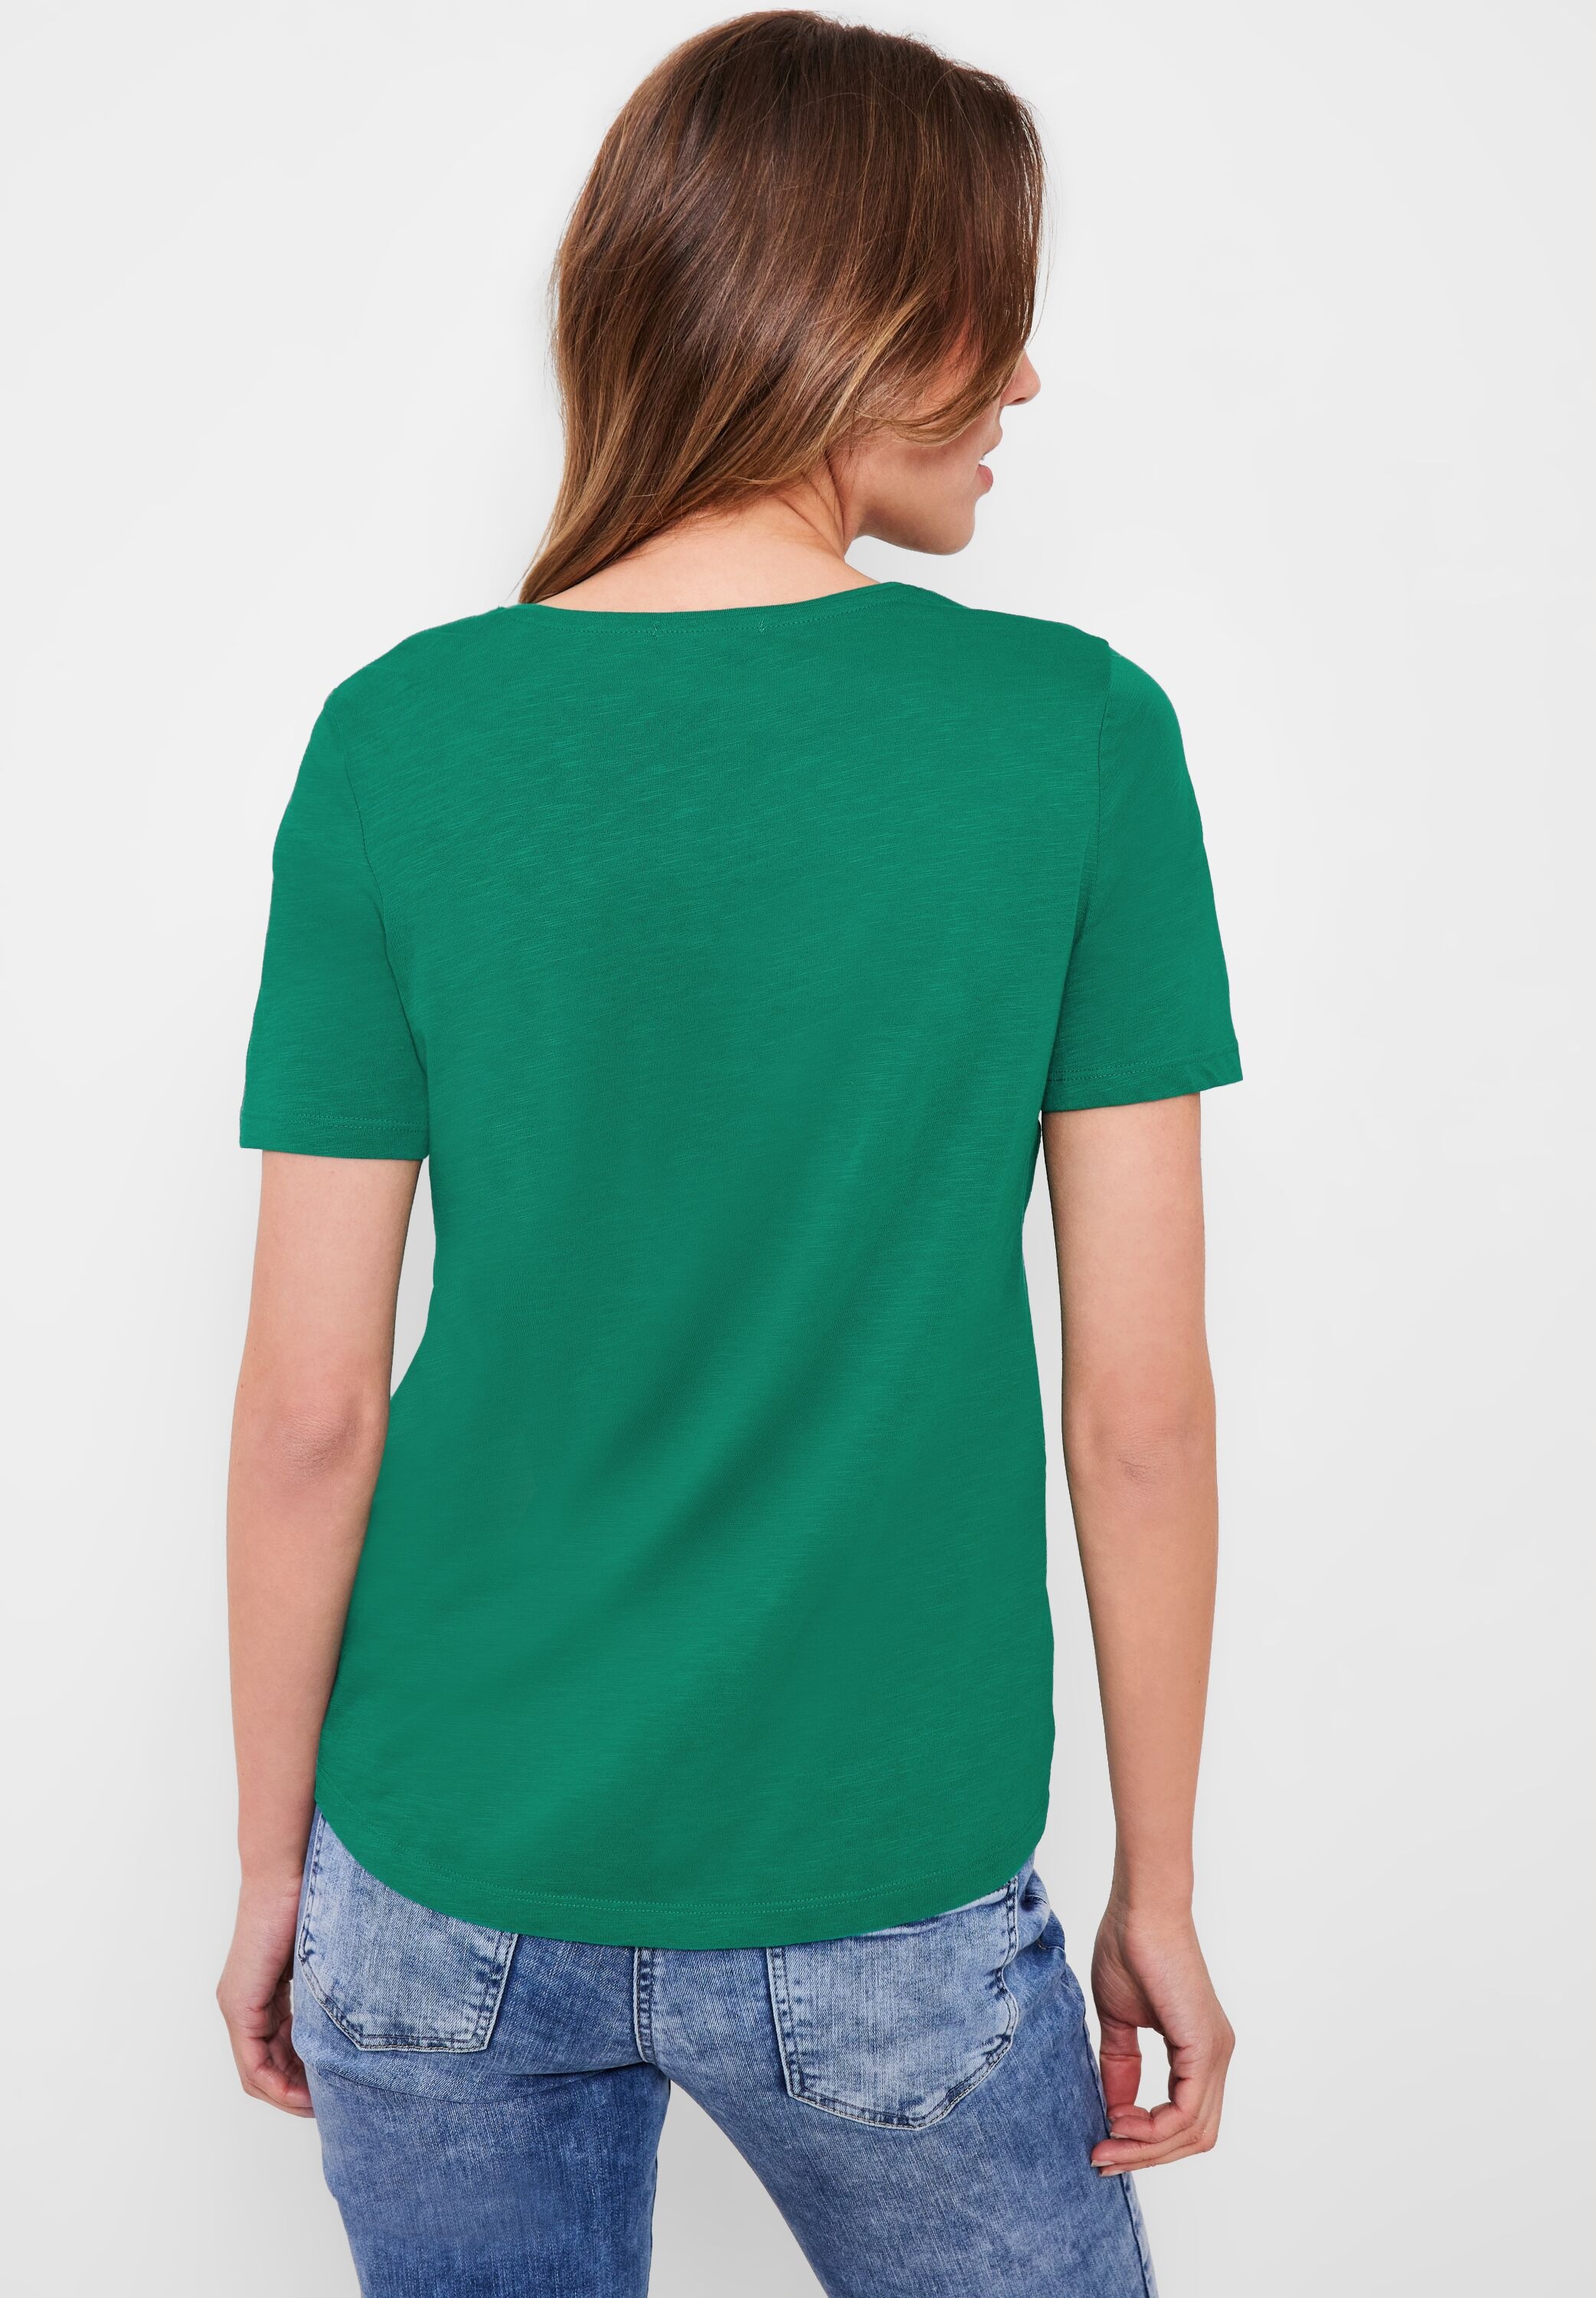 T-Shirt, reiner aus Cecil shoppen Baumwolle